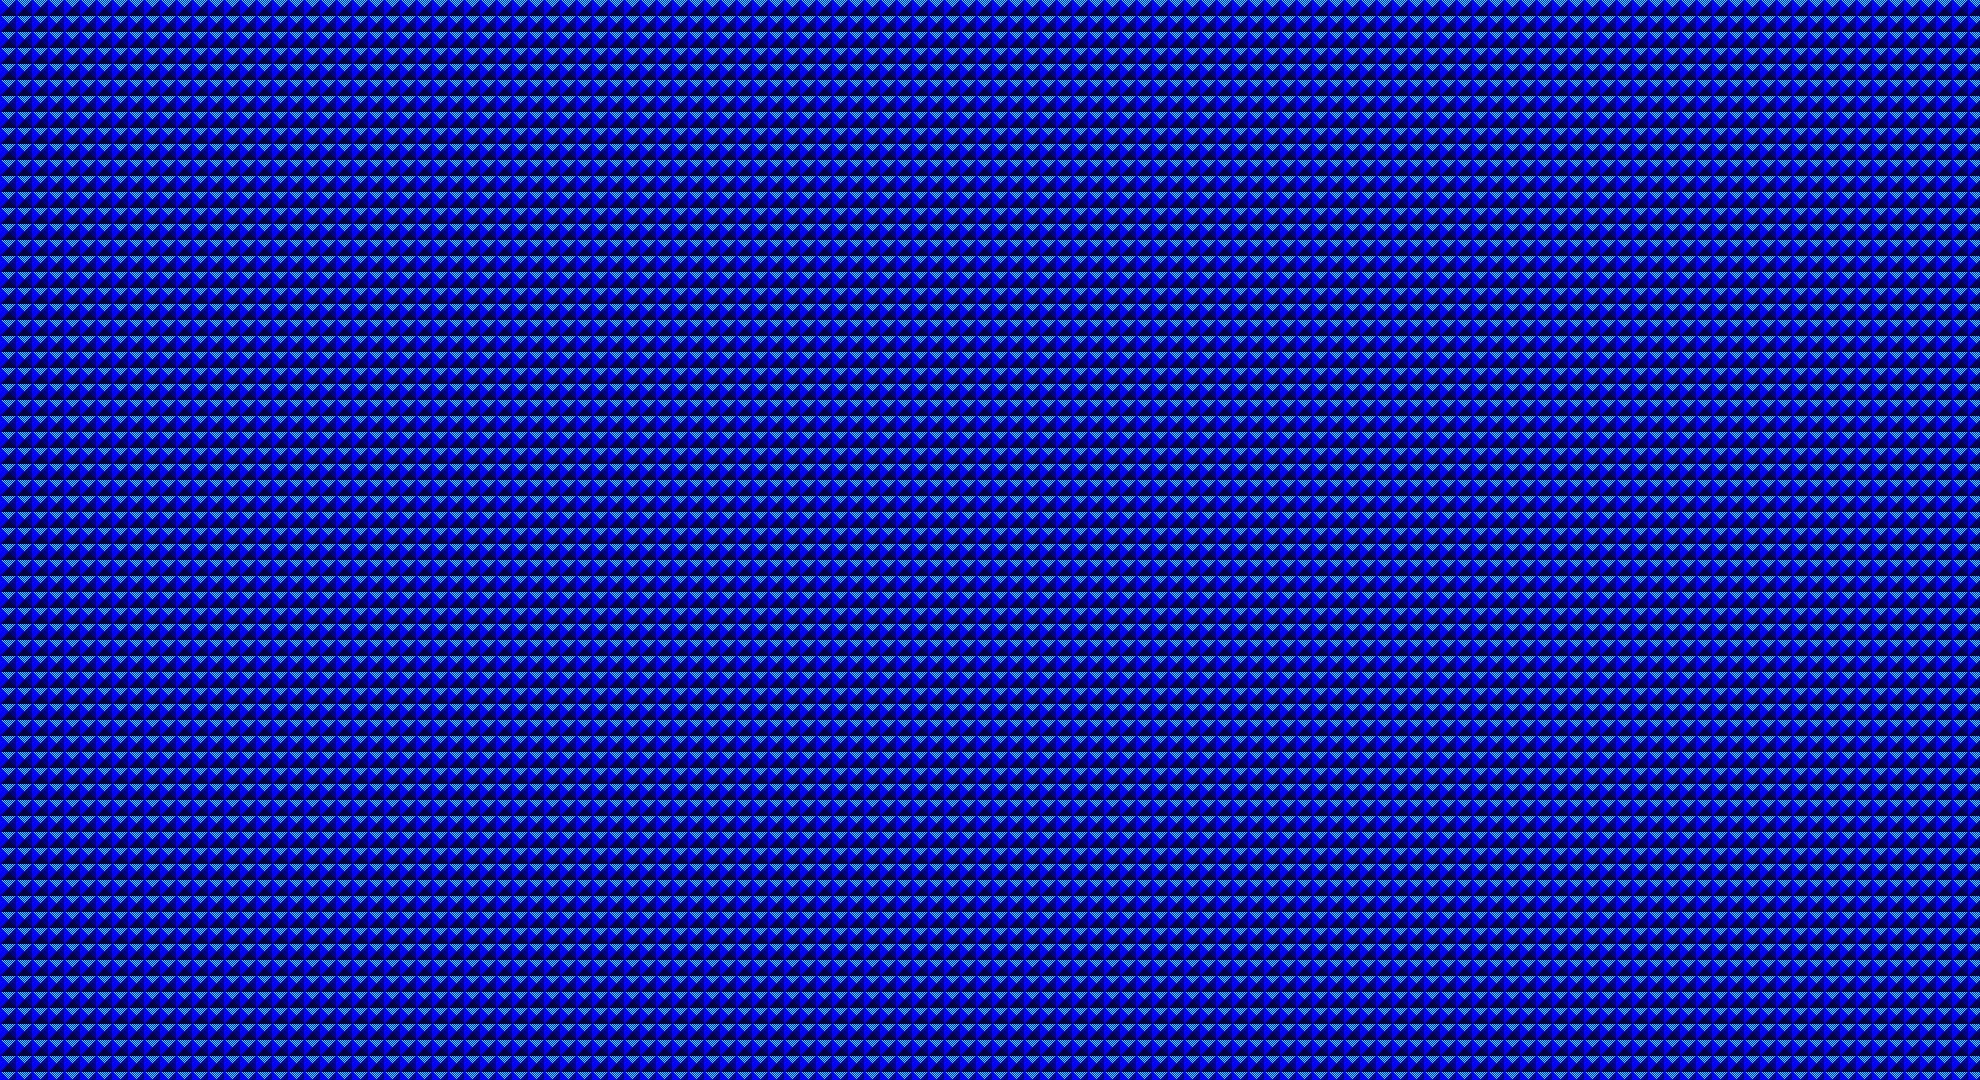 fond d'écran classique windows,bleu cobalt,bleu,violet,bleu électrique,violet